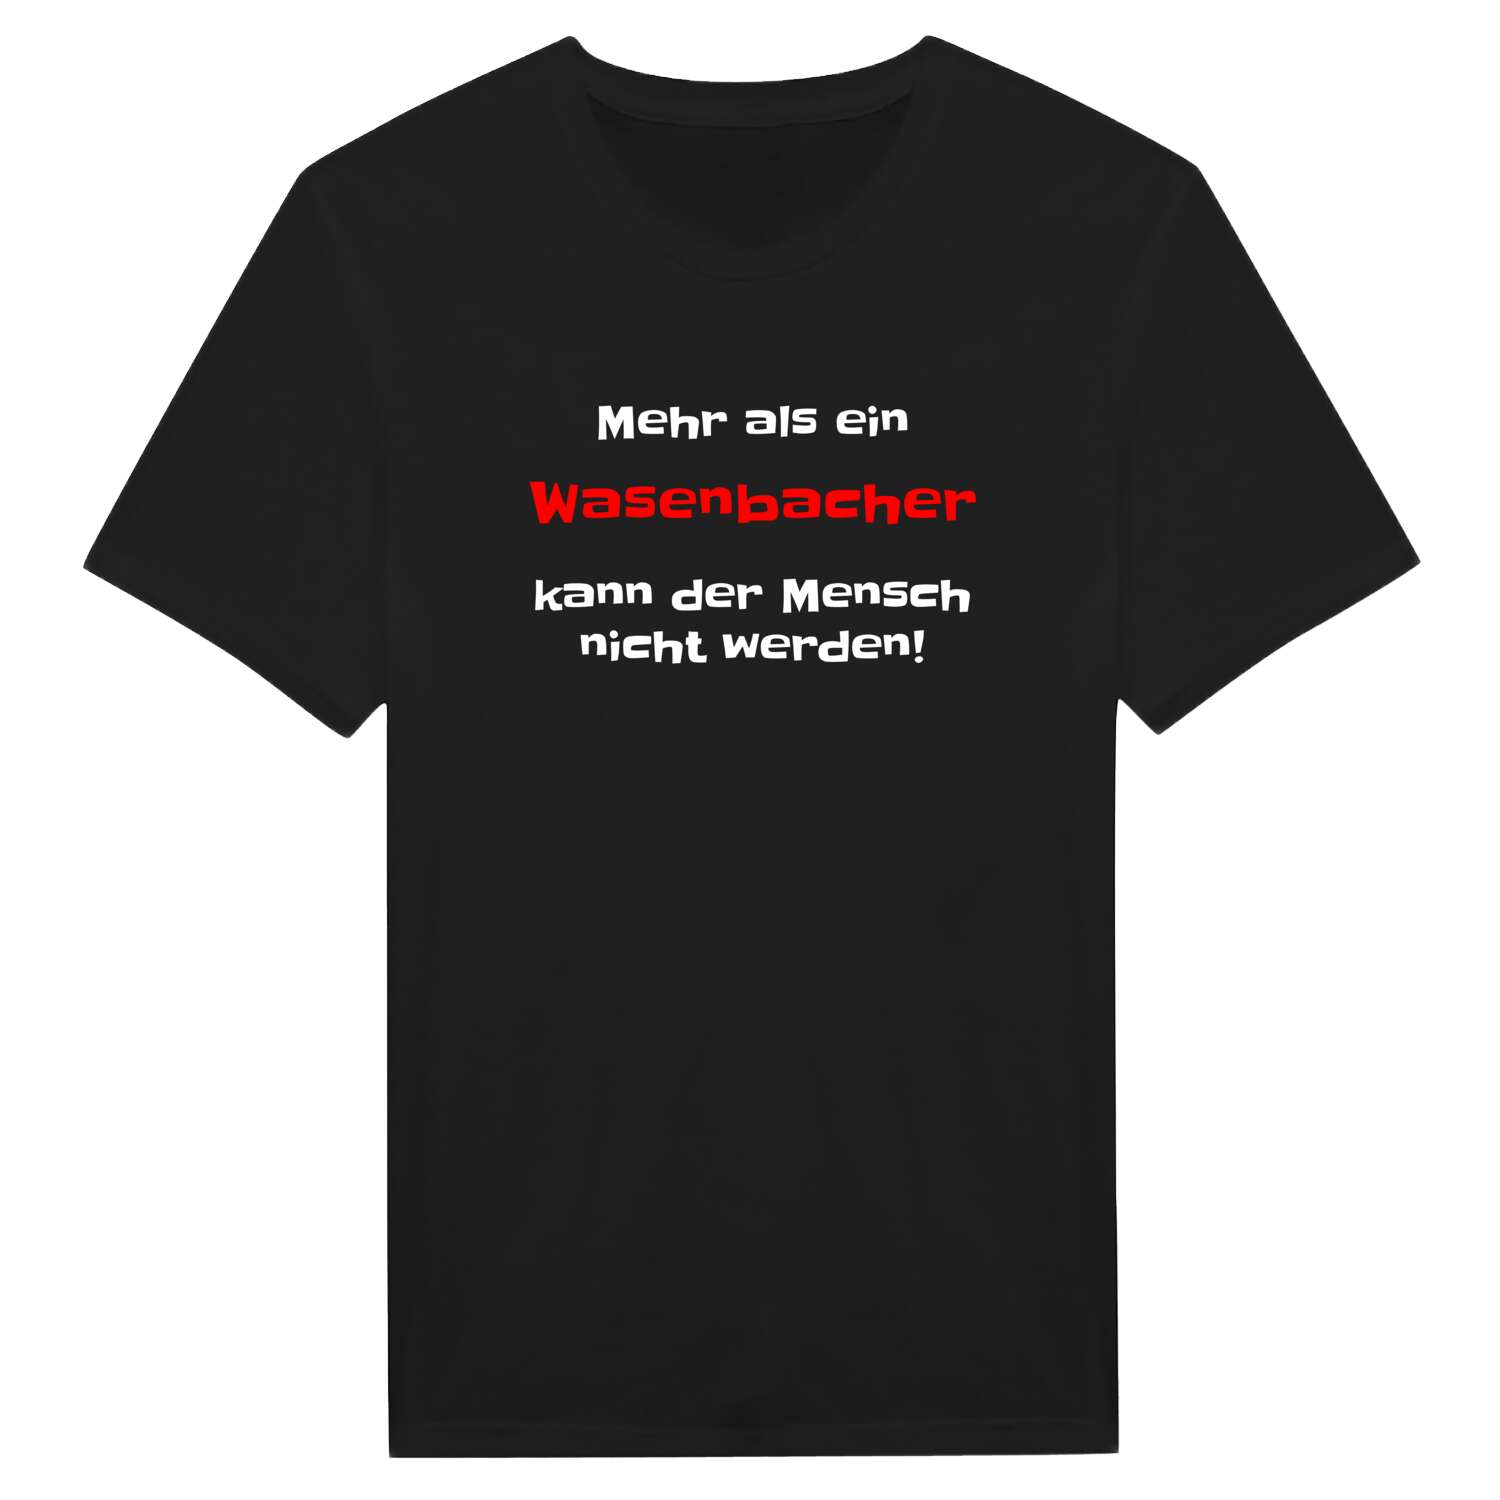 Wasenbach T-Shirt »Mehr als ein«